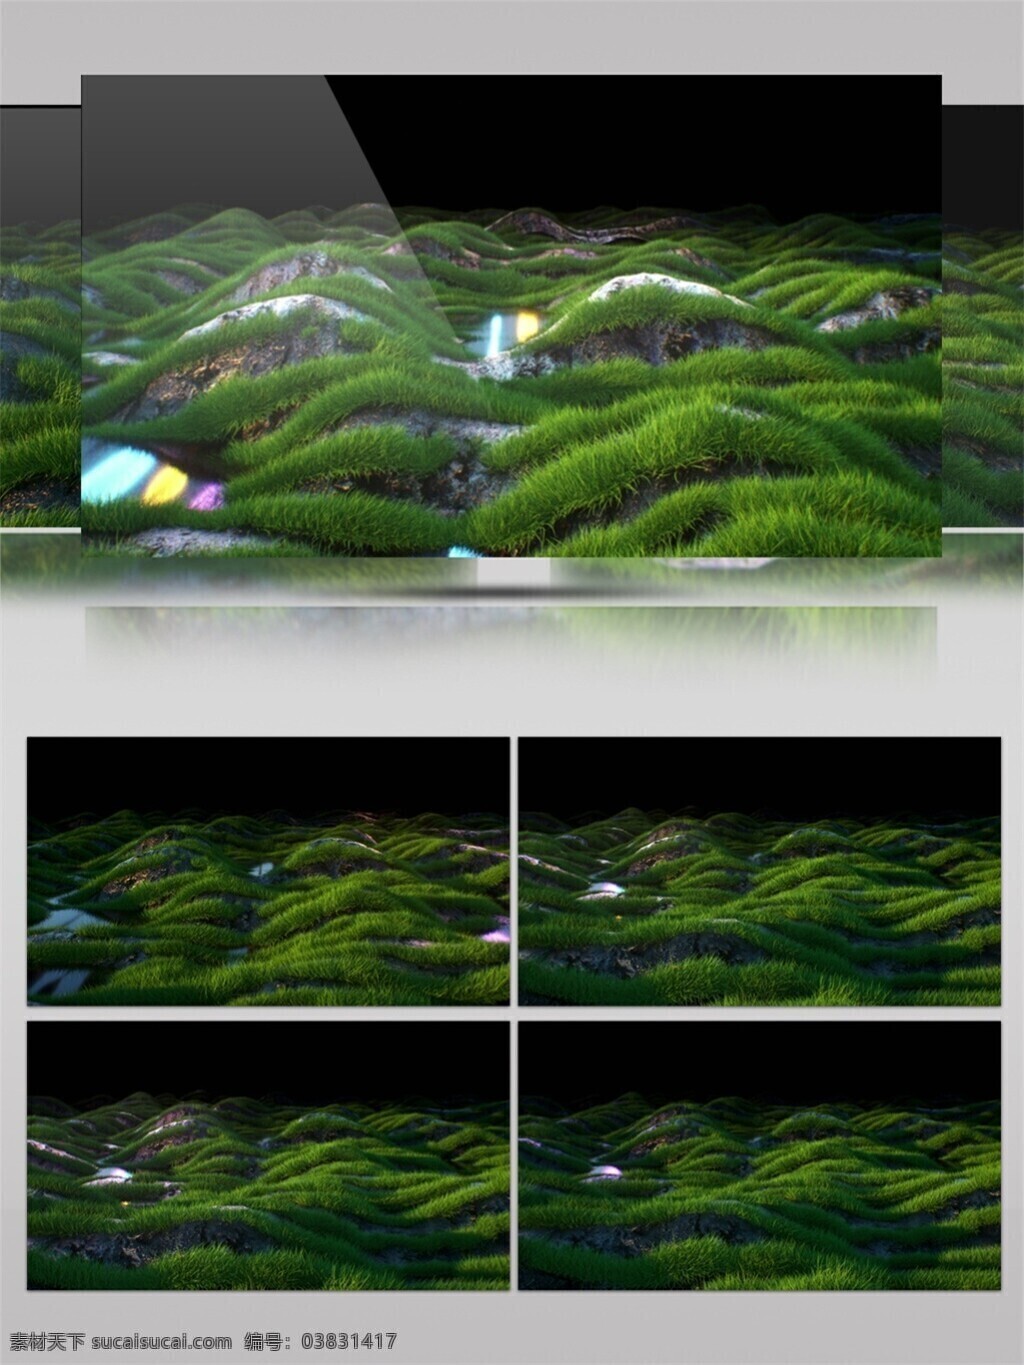 光斑散射 光束 激光 绿色 视觉享受 手机壁纸 星际 草原 动态 视频